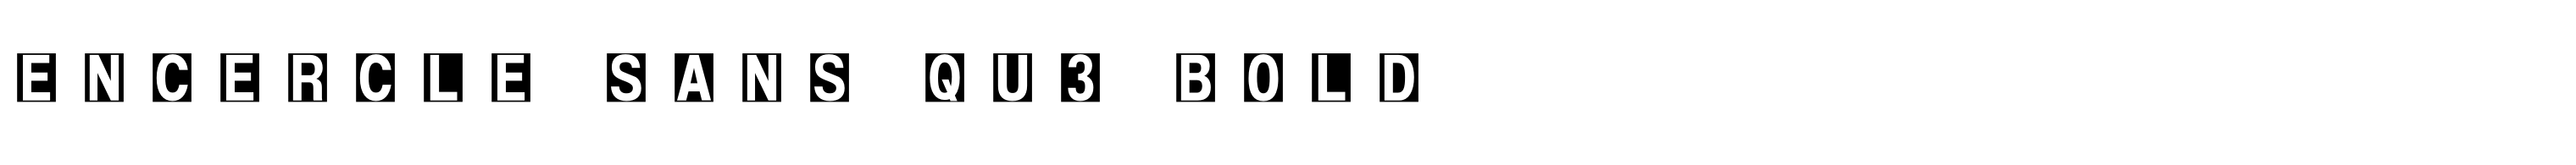 Encercle Sans Qu3 Bold